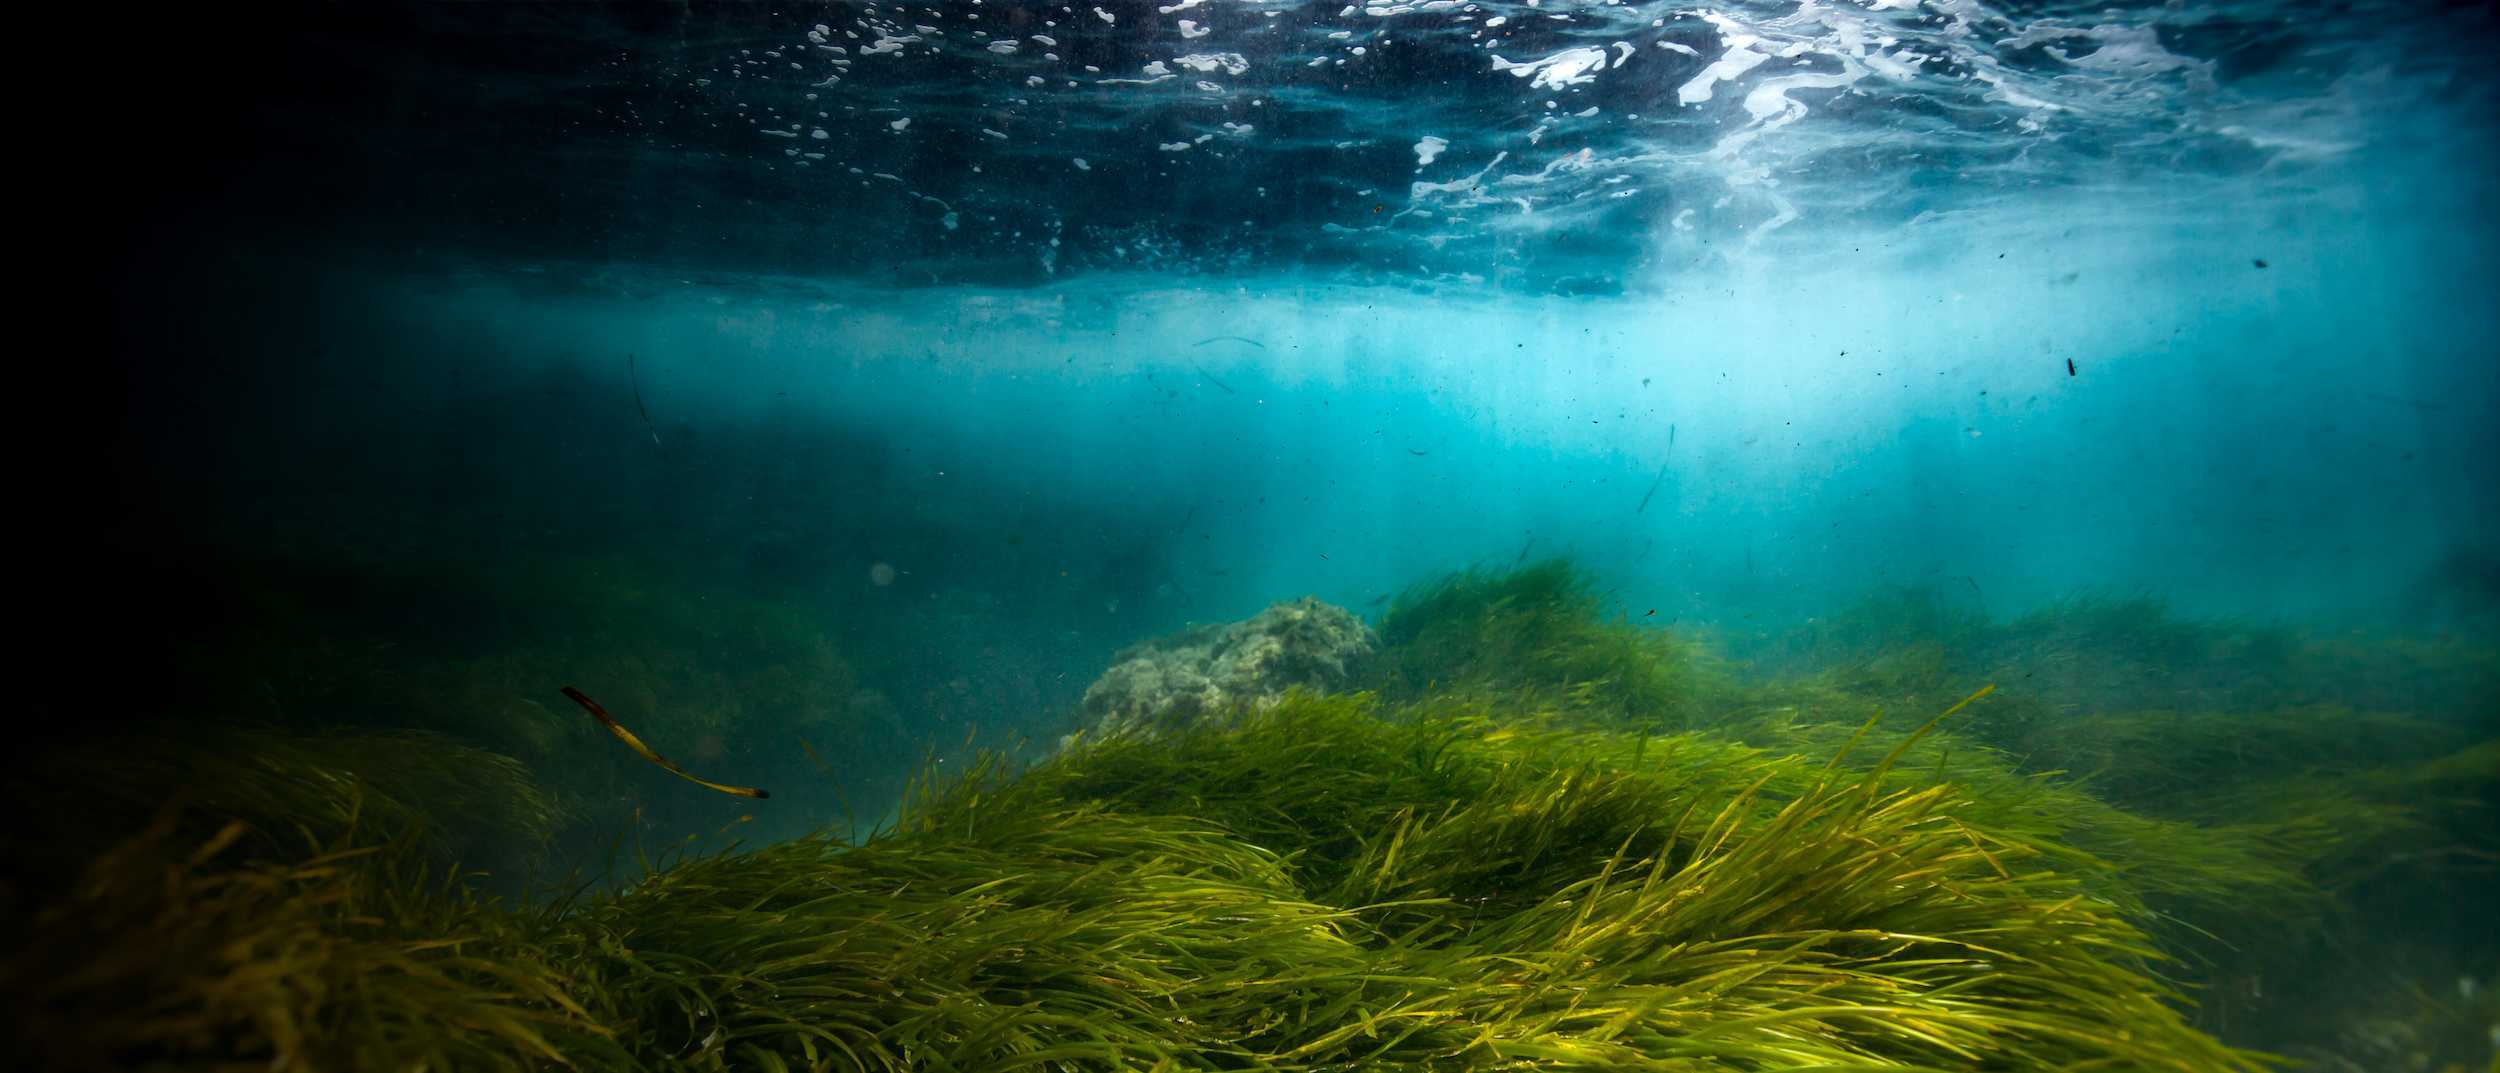 Underwater world image